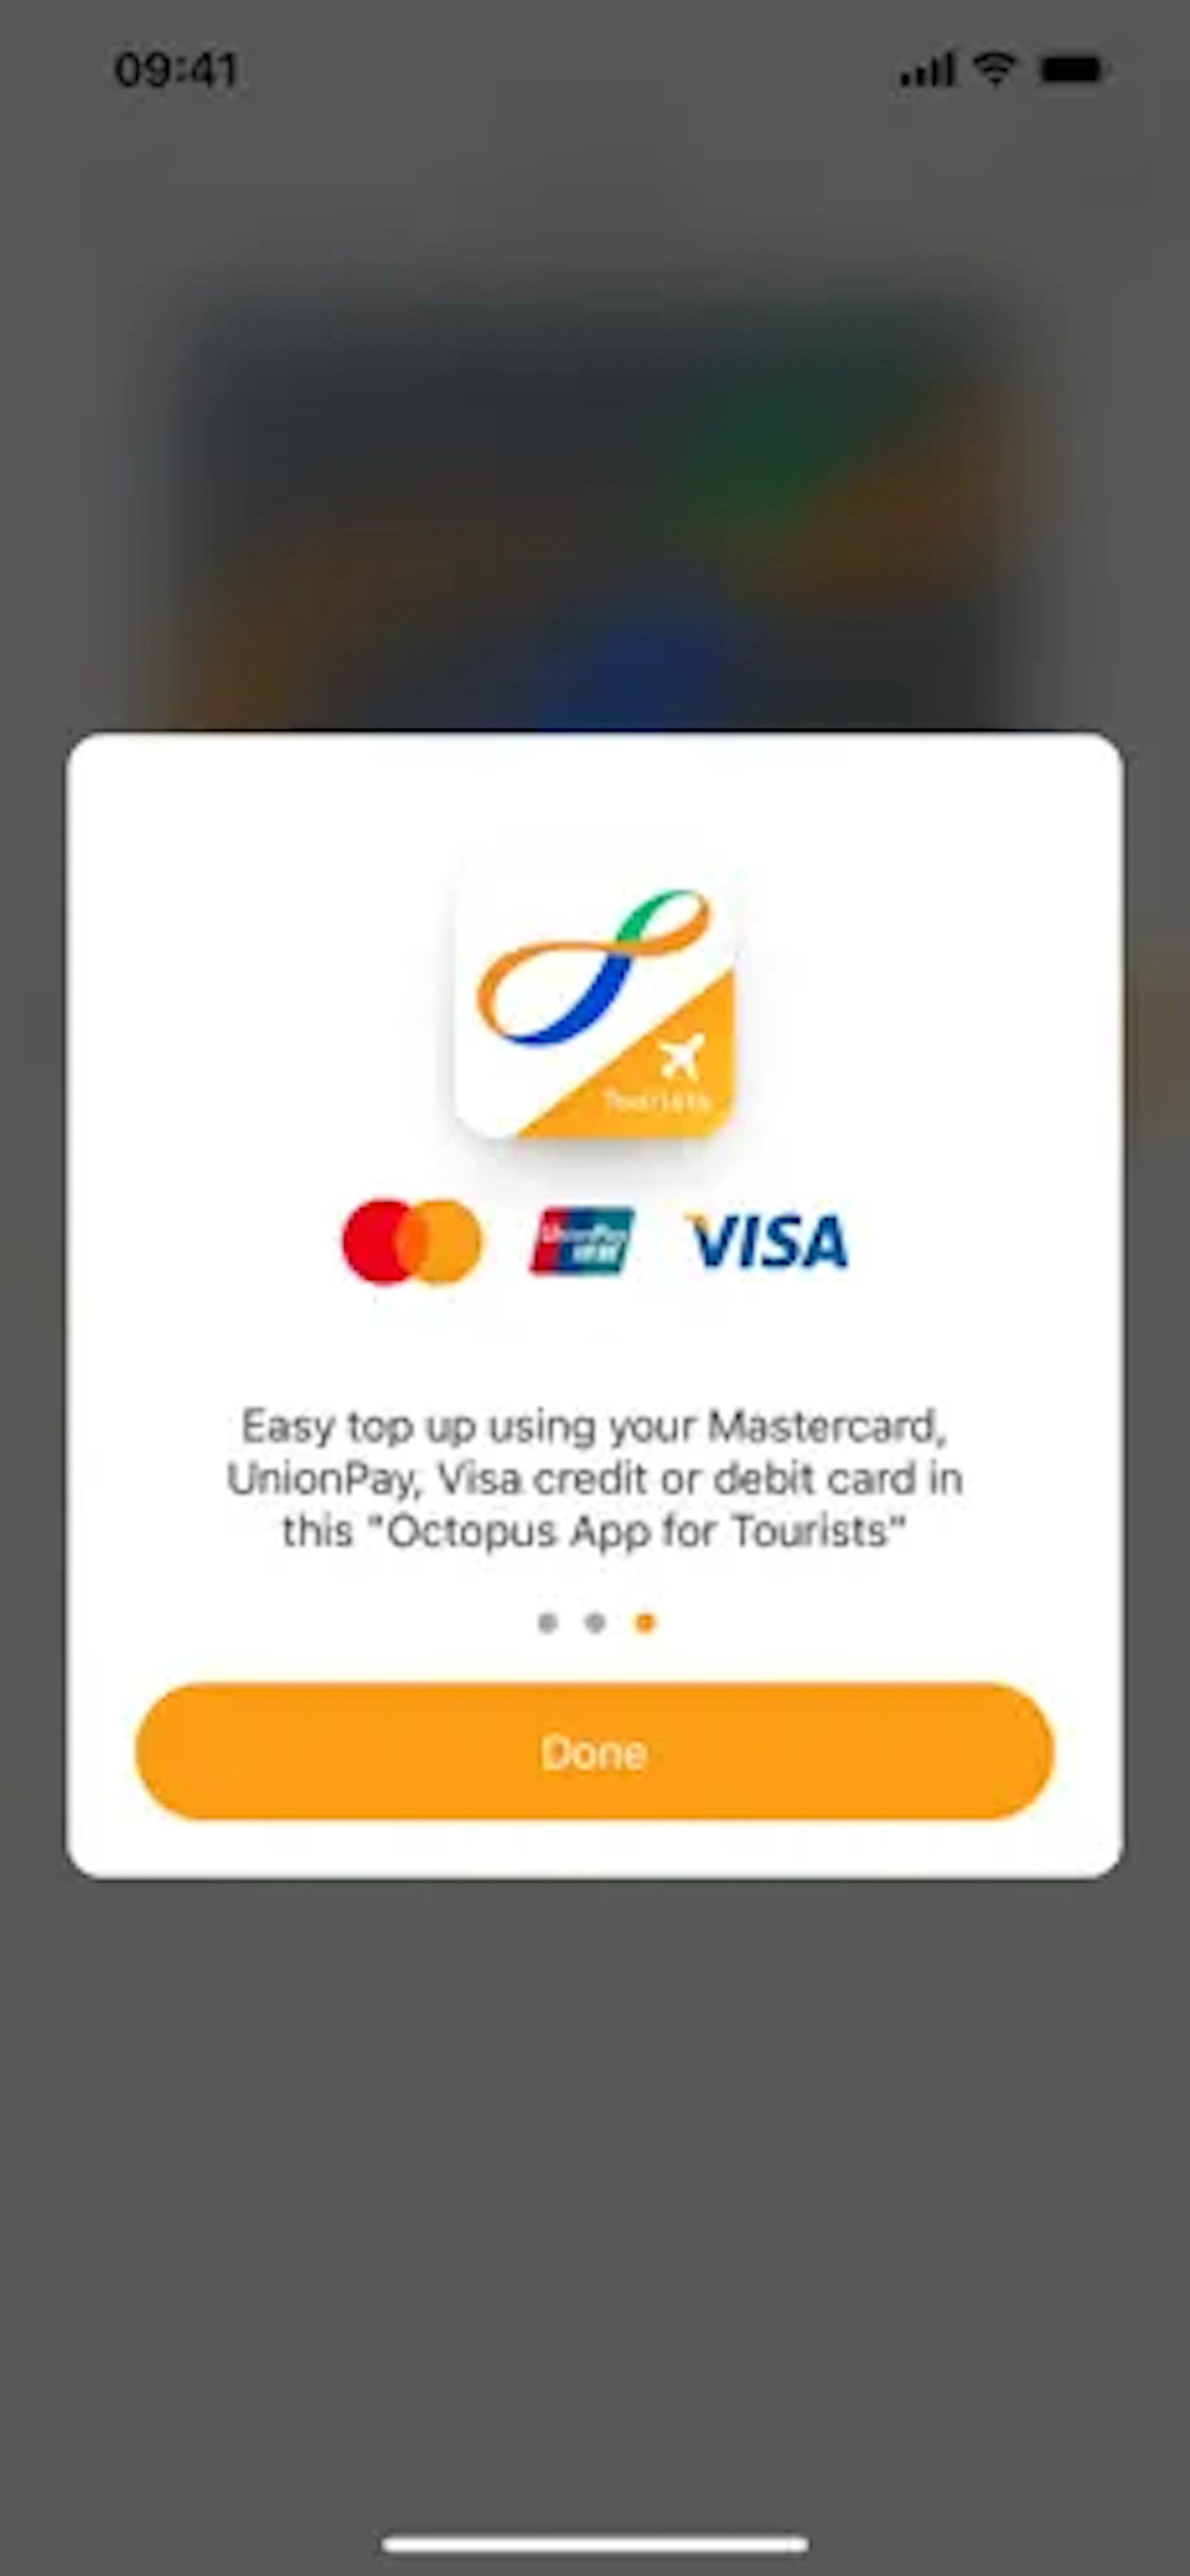 八達通旅客版App支援非香港發出的萬事達卡、銀聯或Visa信用卡。（網頁圖片）